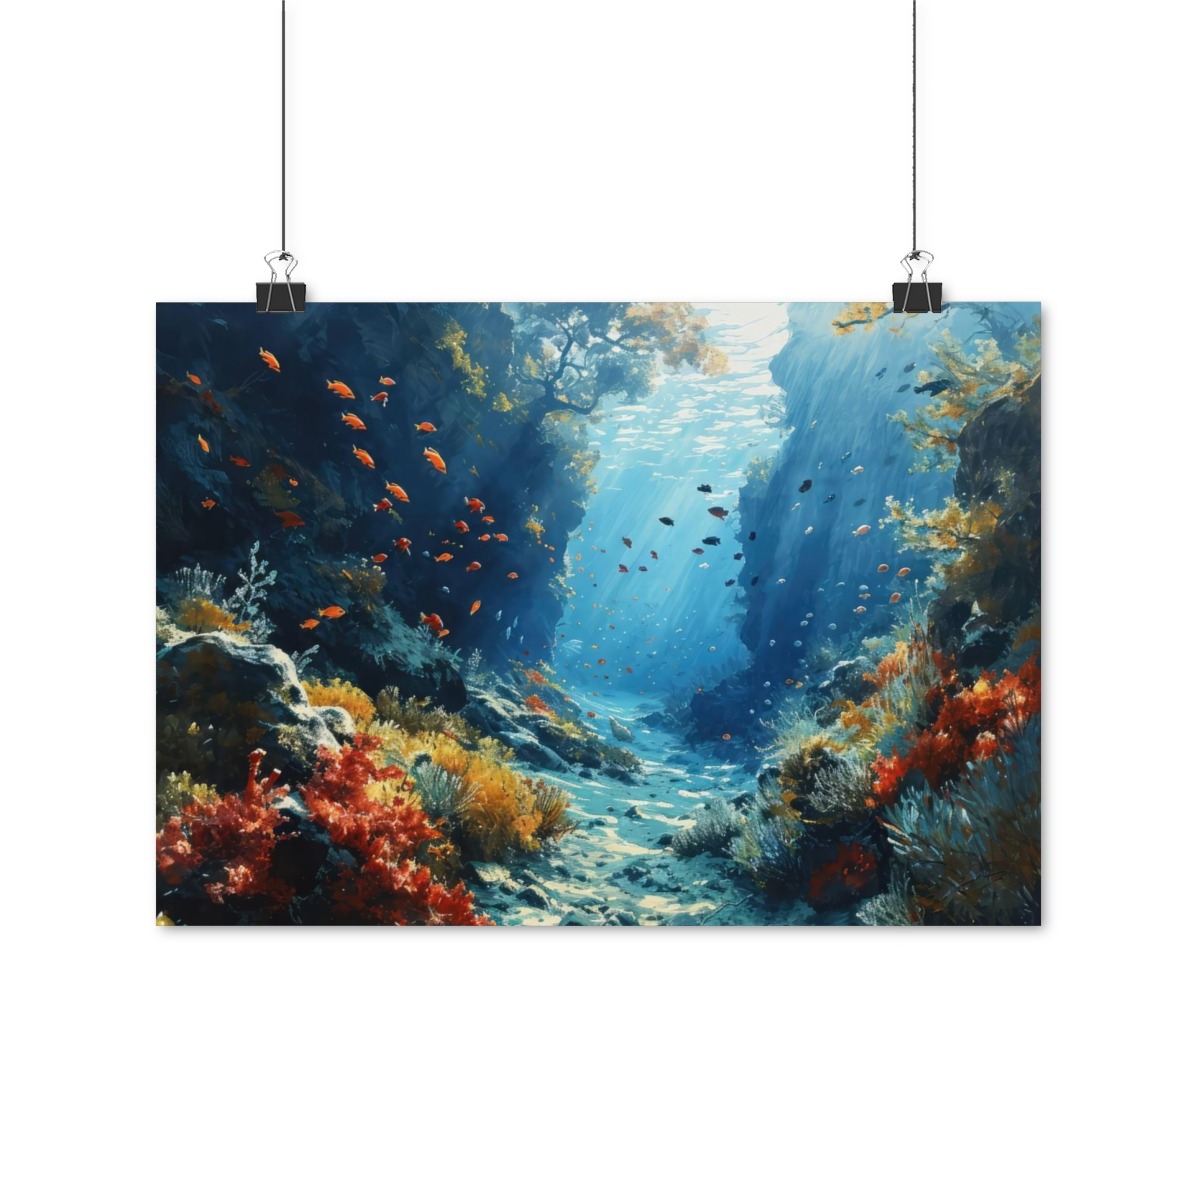 Meereszauber Aquarell Poster - Beeindruckendes Wandbild für Zuhause oder Büro